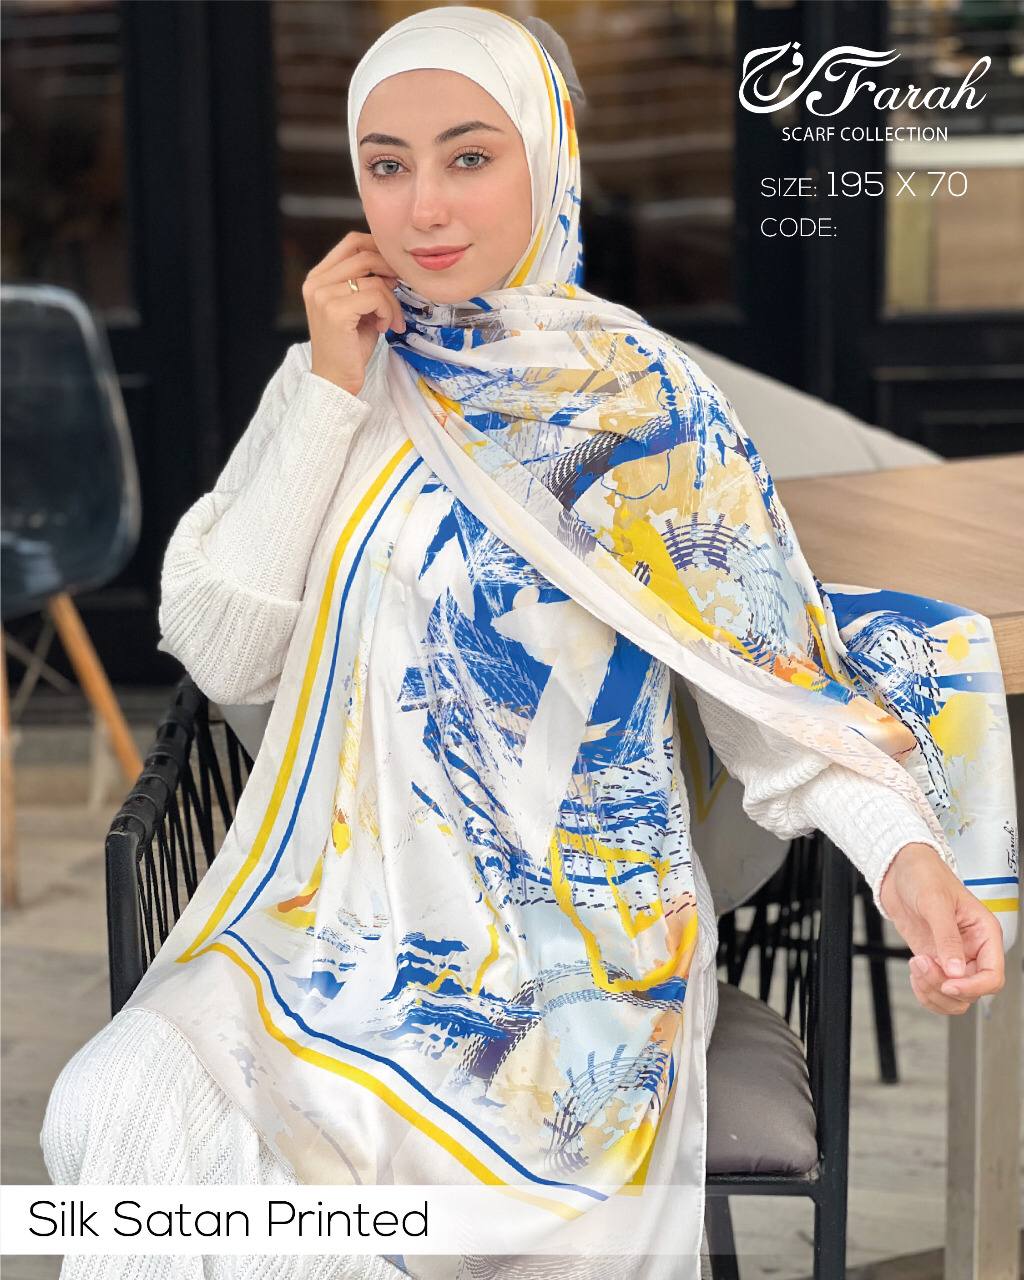 طرحة حجاب ساتان حربر مطبوعة 195 * 70 سم إيشارب مجموعة رائعة من التصميمات - Style-6